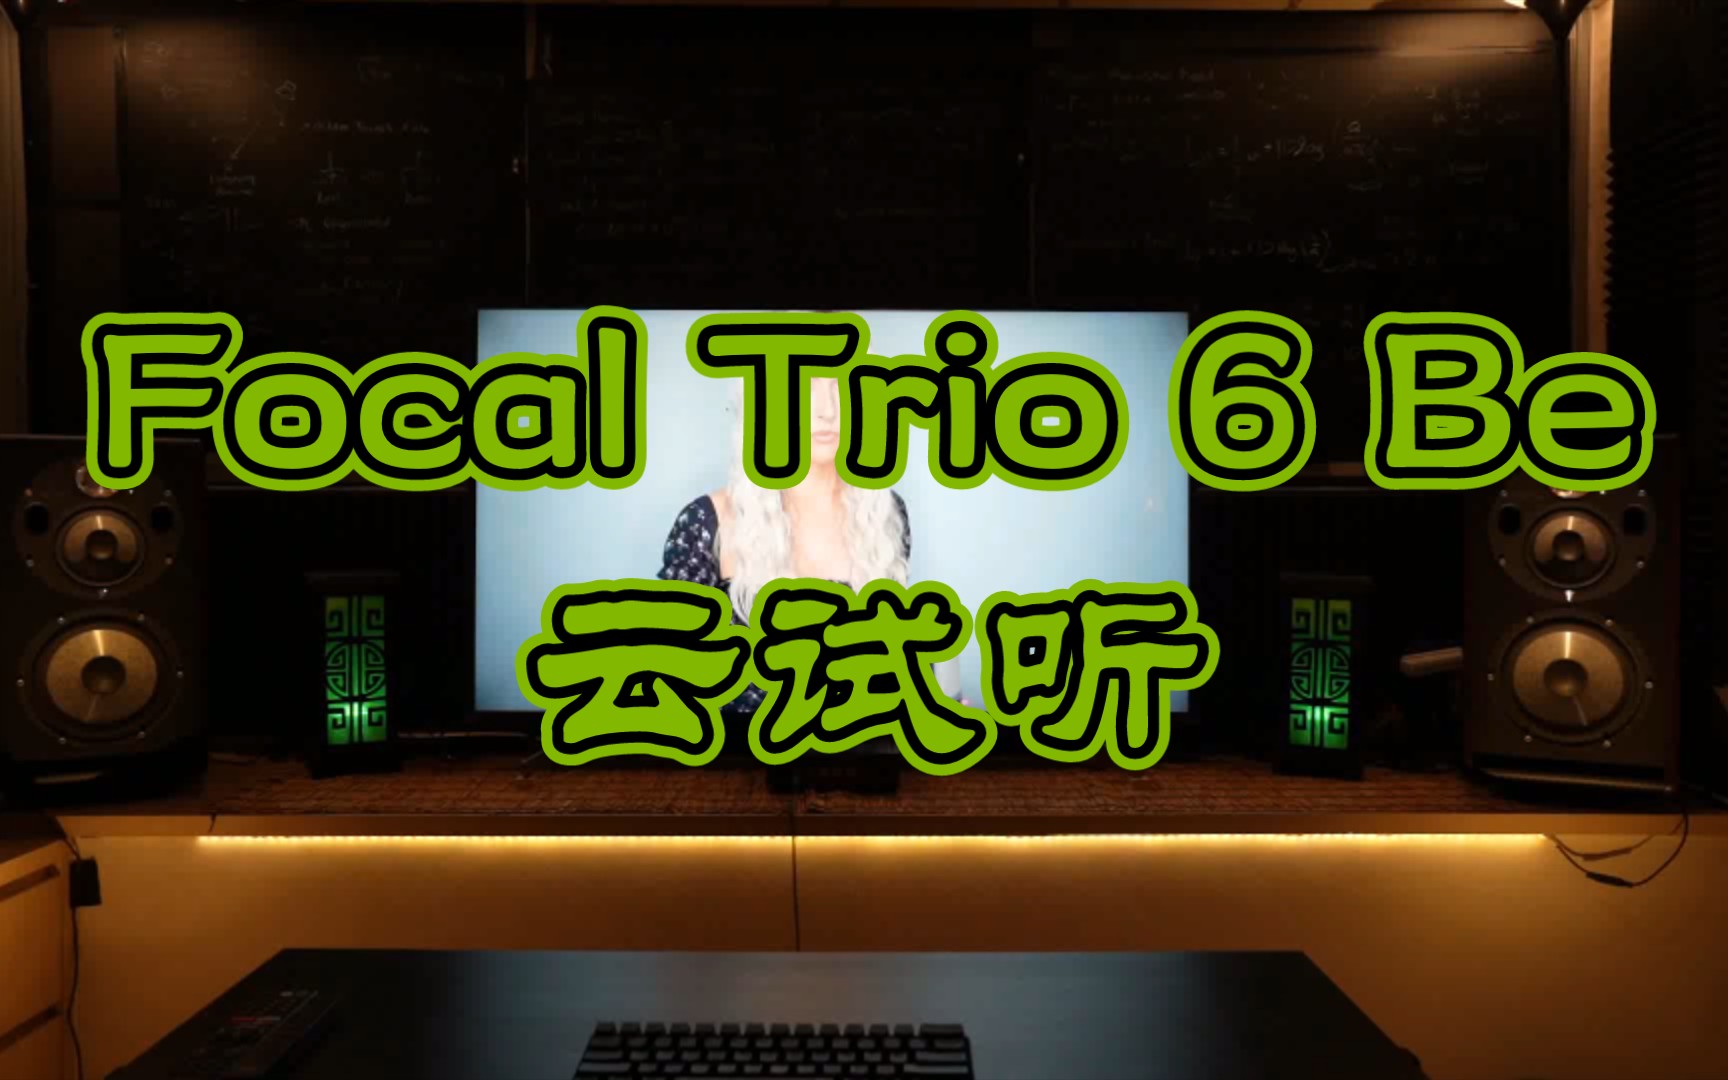 劲浪监听音箱 Focal Trio 6 Be云试听